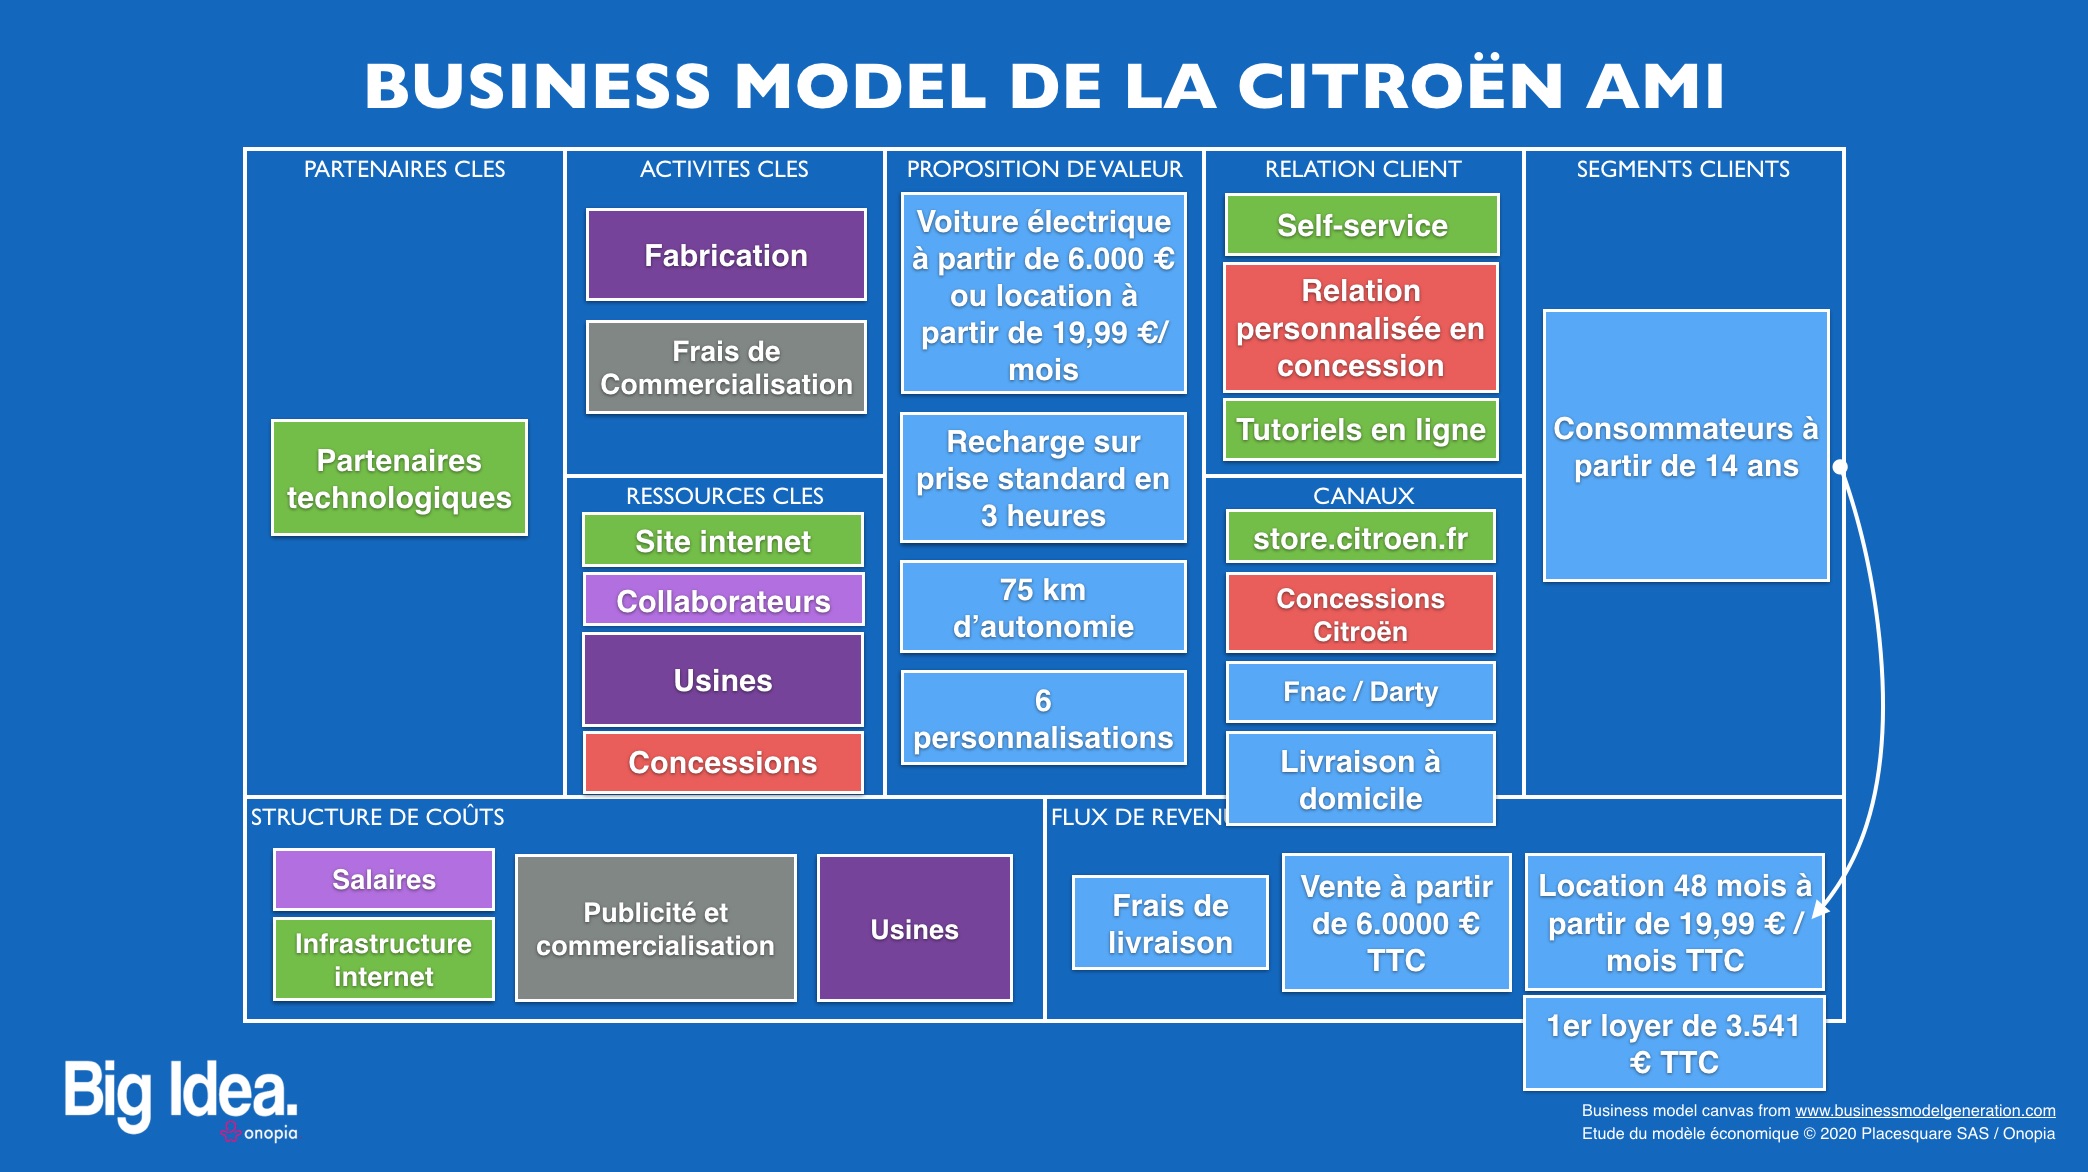 Onopia - Etude du modèle économique de la Citroën AMI